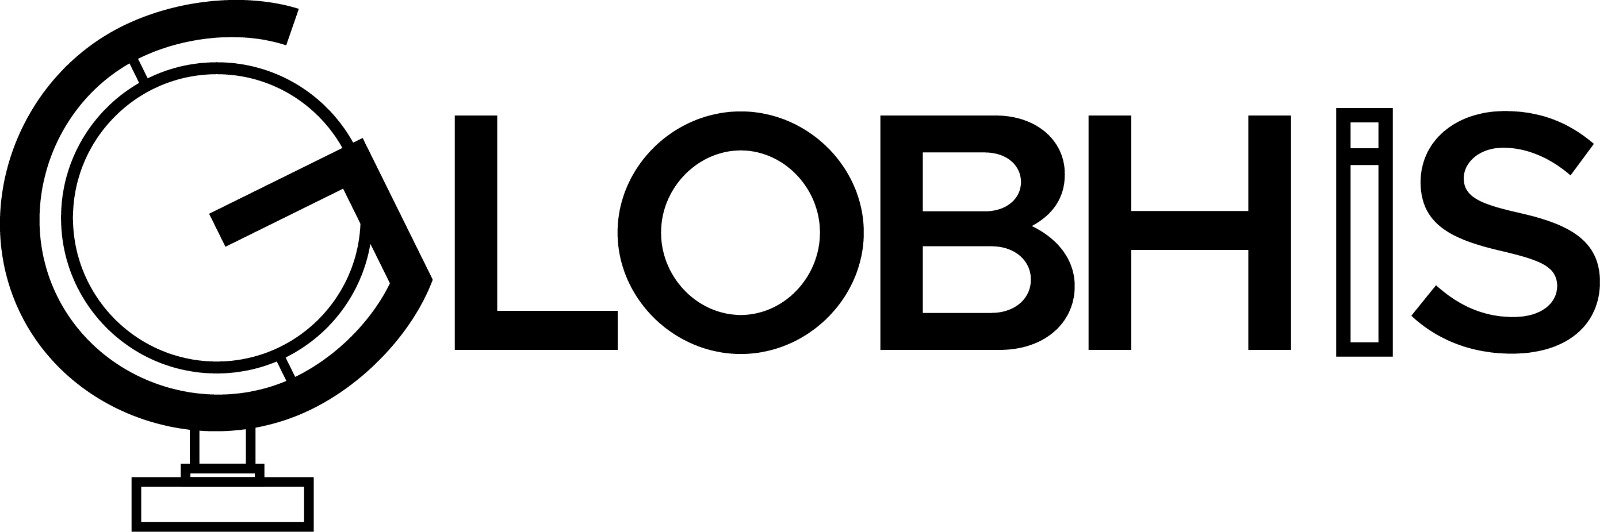 GLOBHIS u2013 Network for Global History